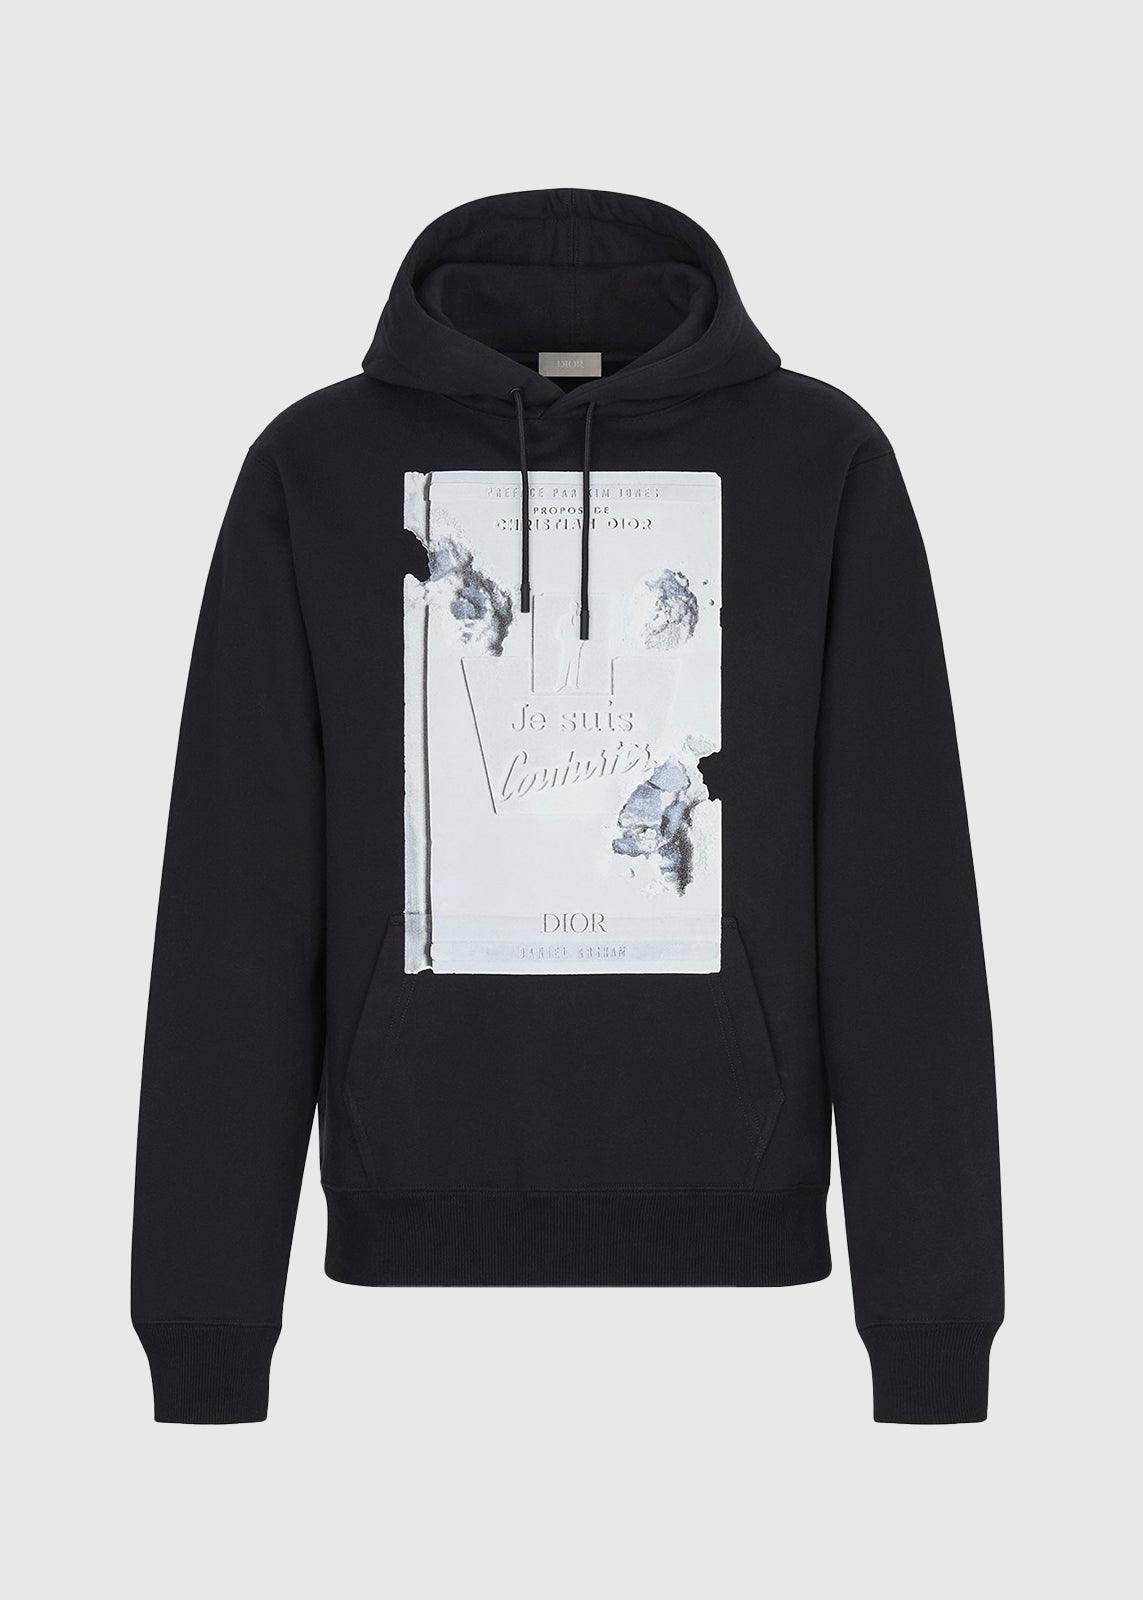 dior hoodie price